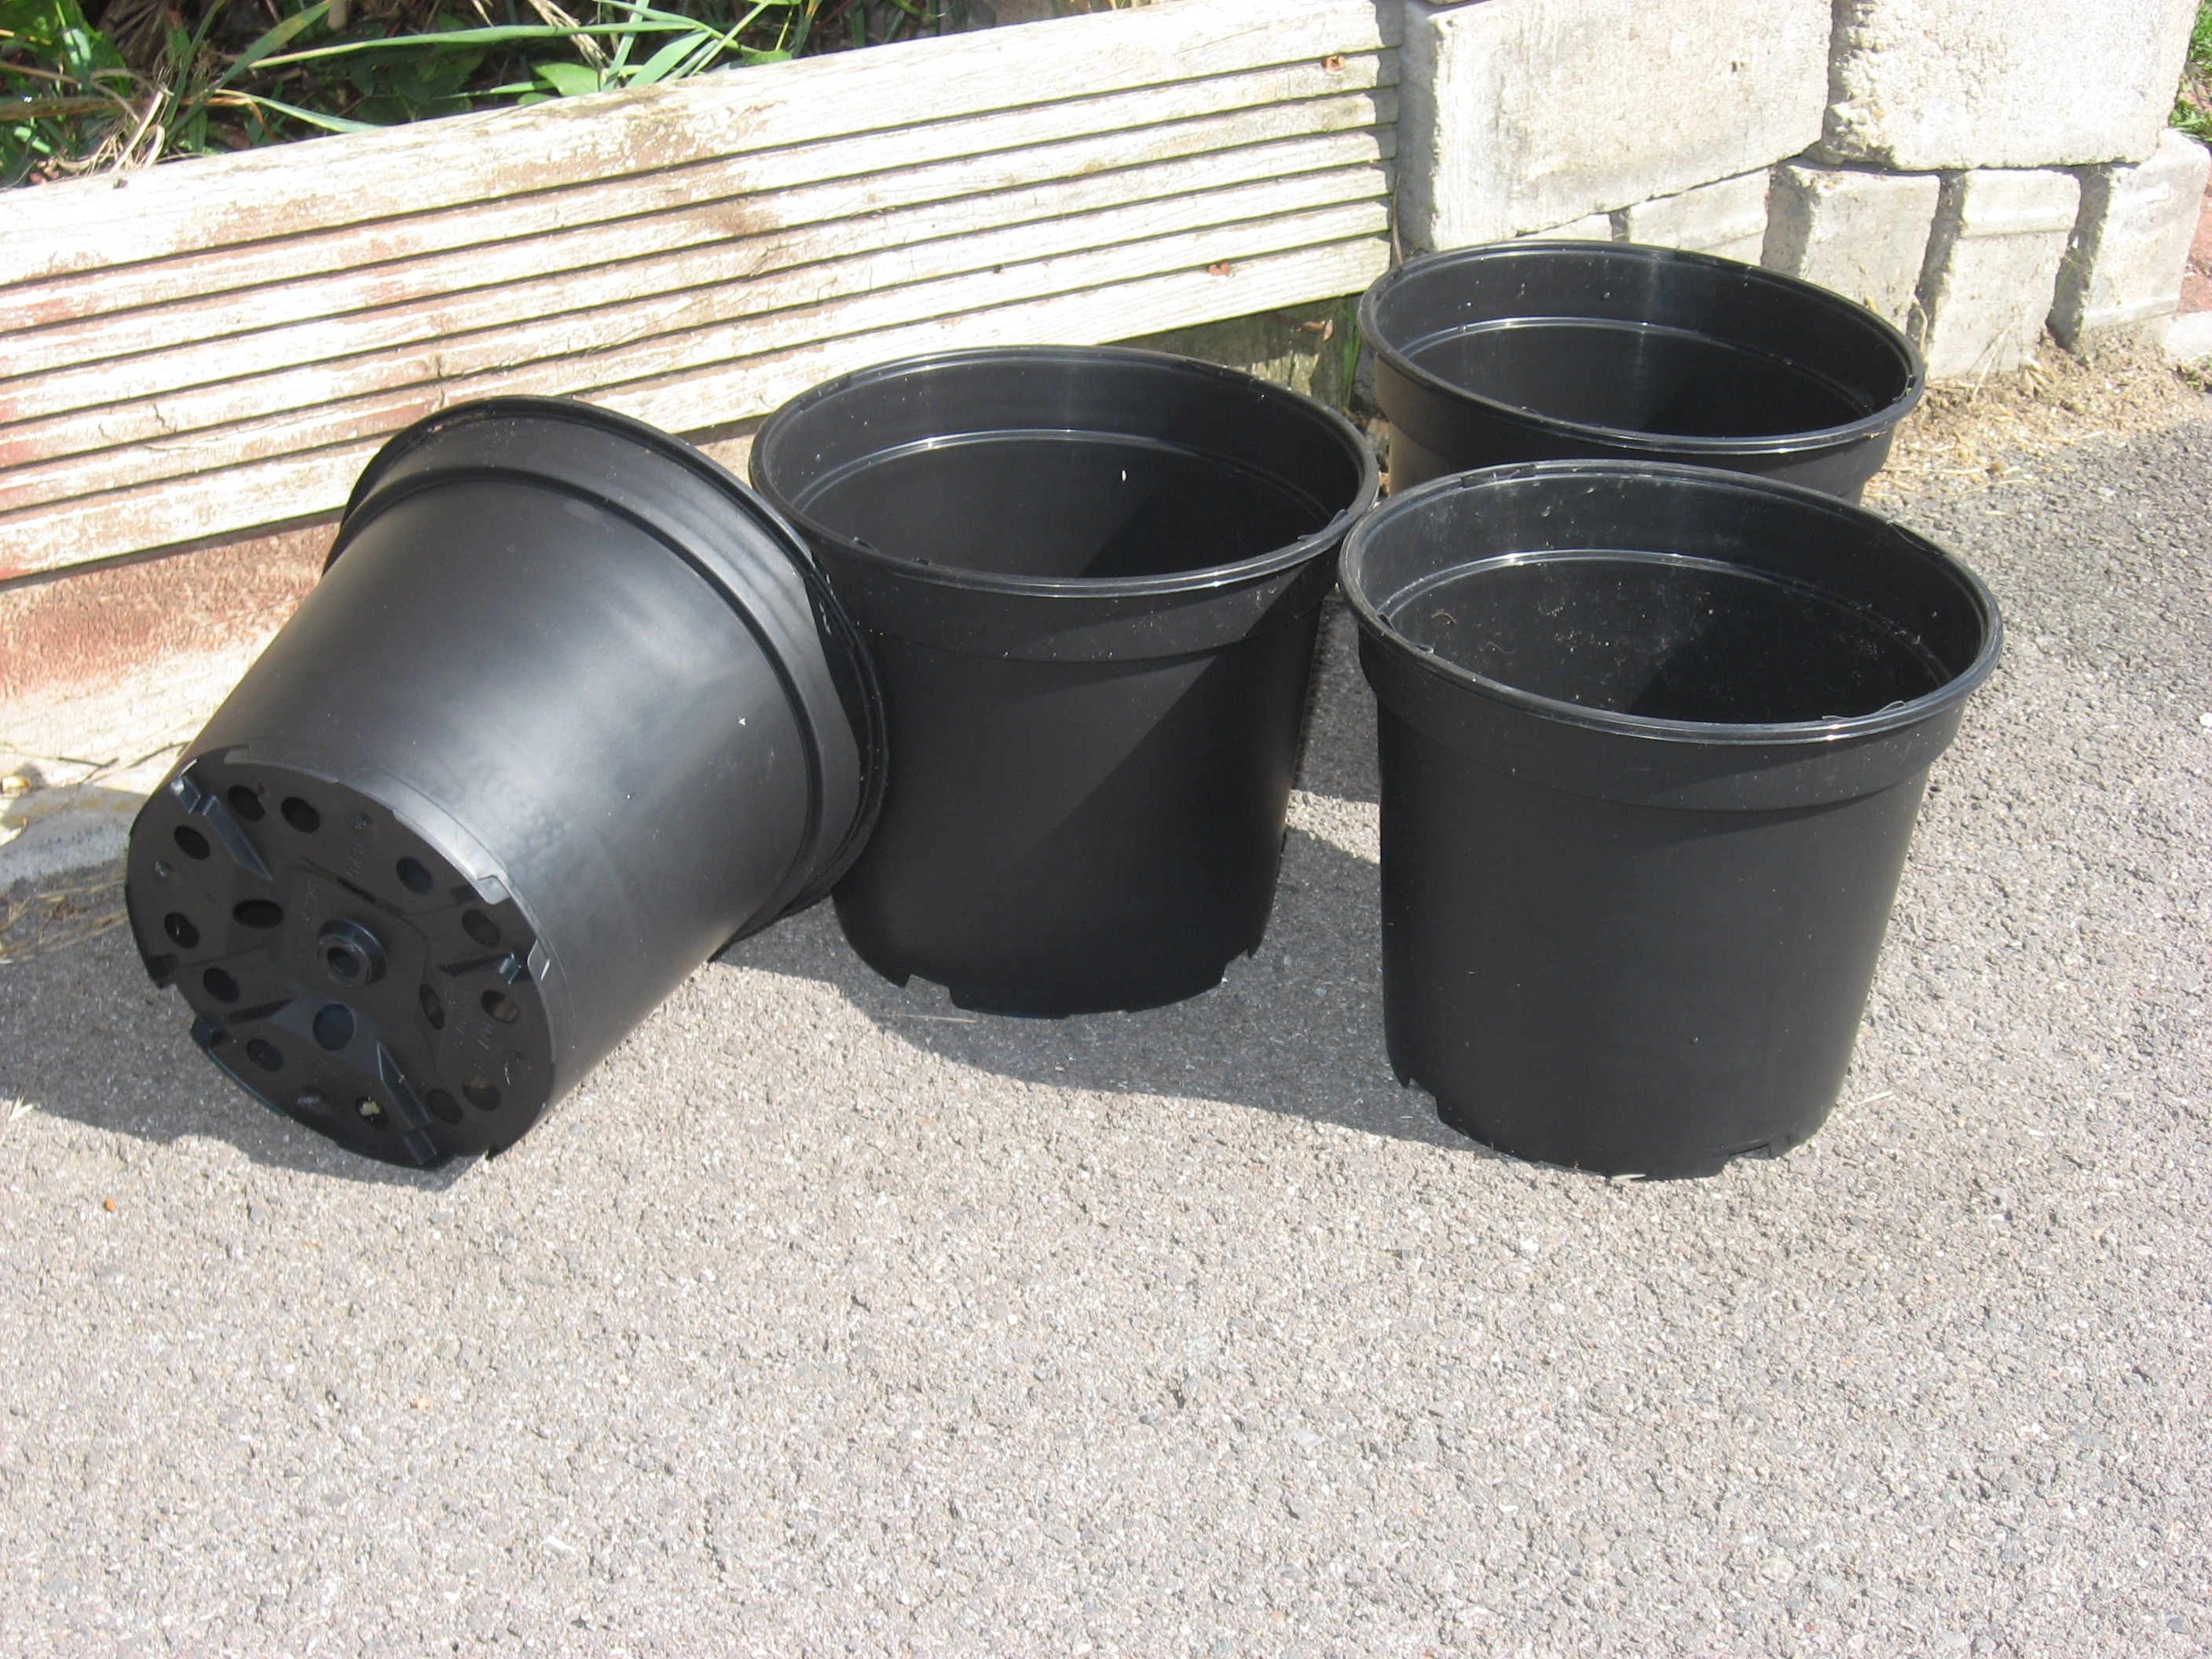 4 round plastic pail